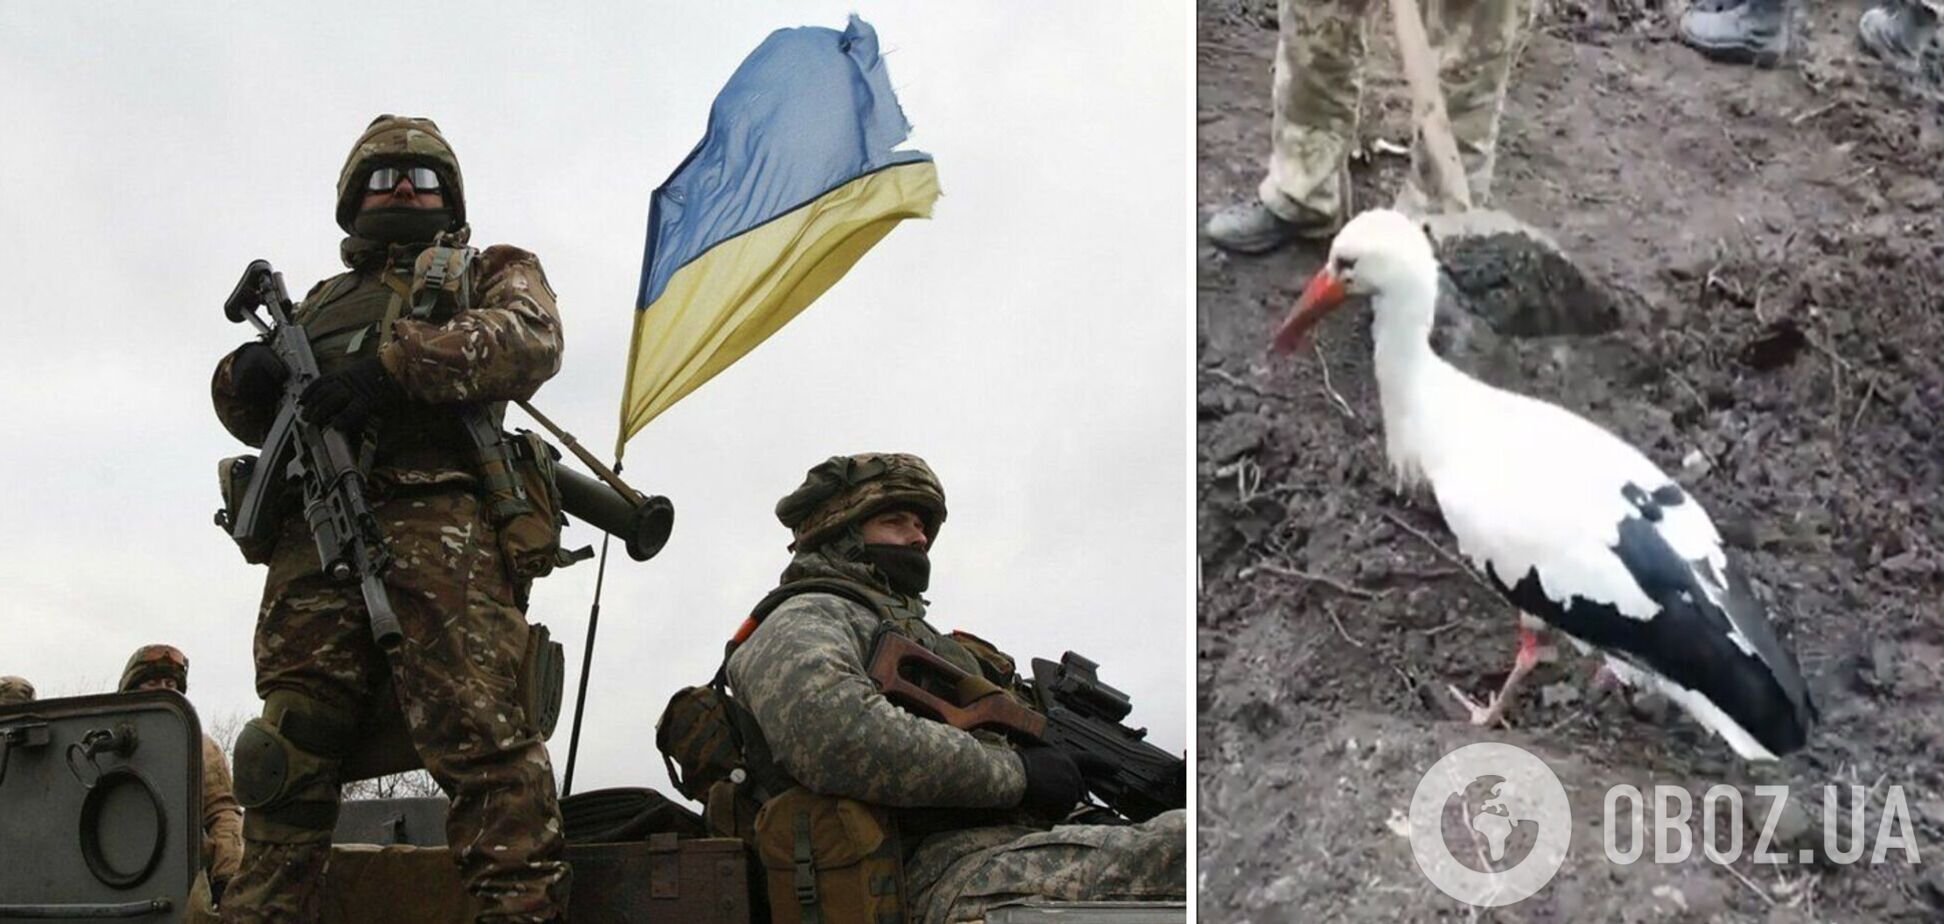 Как символ счастья и победы: на позиции к украинским военным прилетел аист. Видео